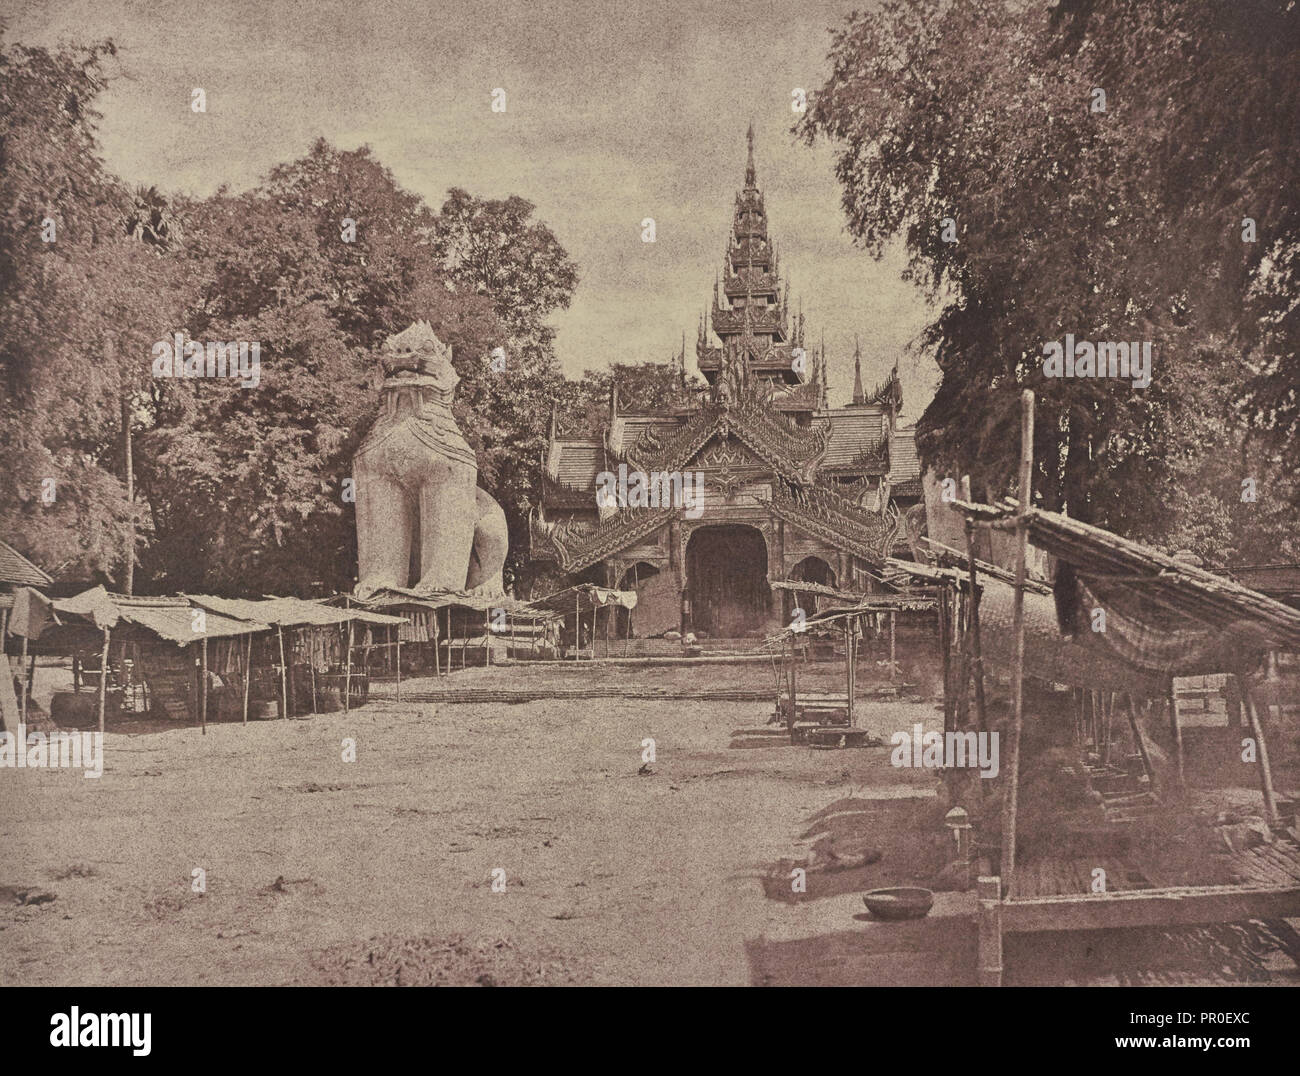 No. 78. Amerapoora. Ingresso della Pagoda Aracan; Capt. Linnaeus trippa, inglese, 1822 - 1902, Calcutta, India; 1855; salati Foto Stock